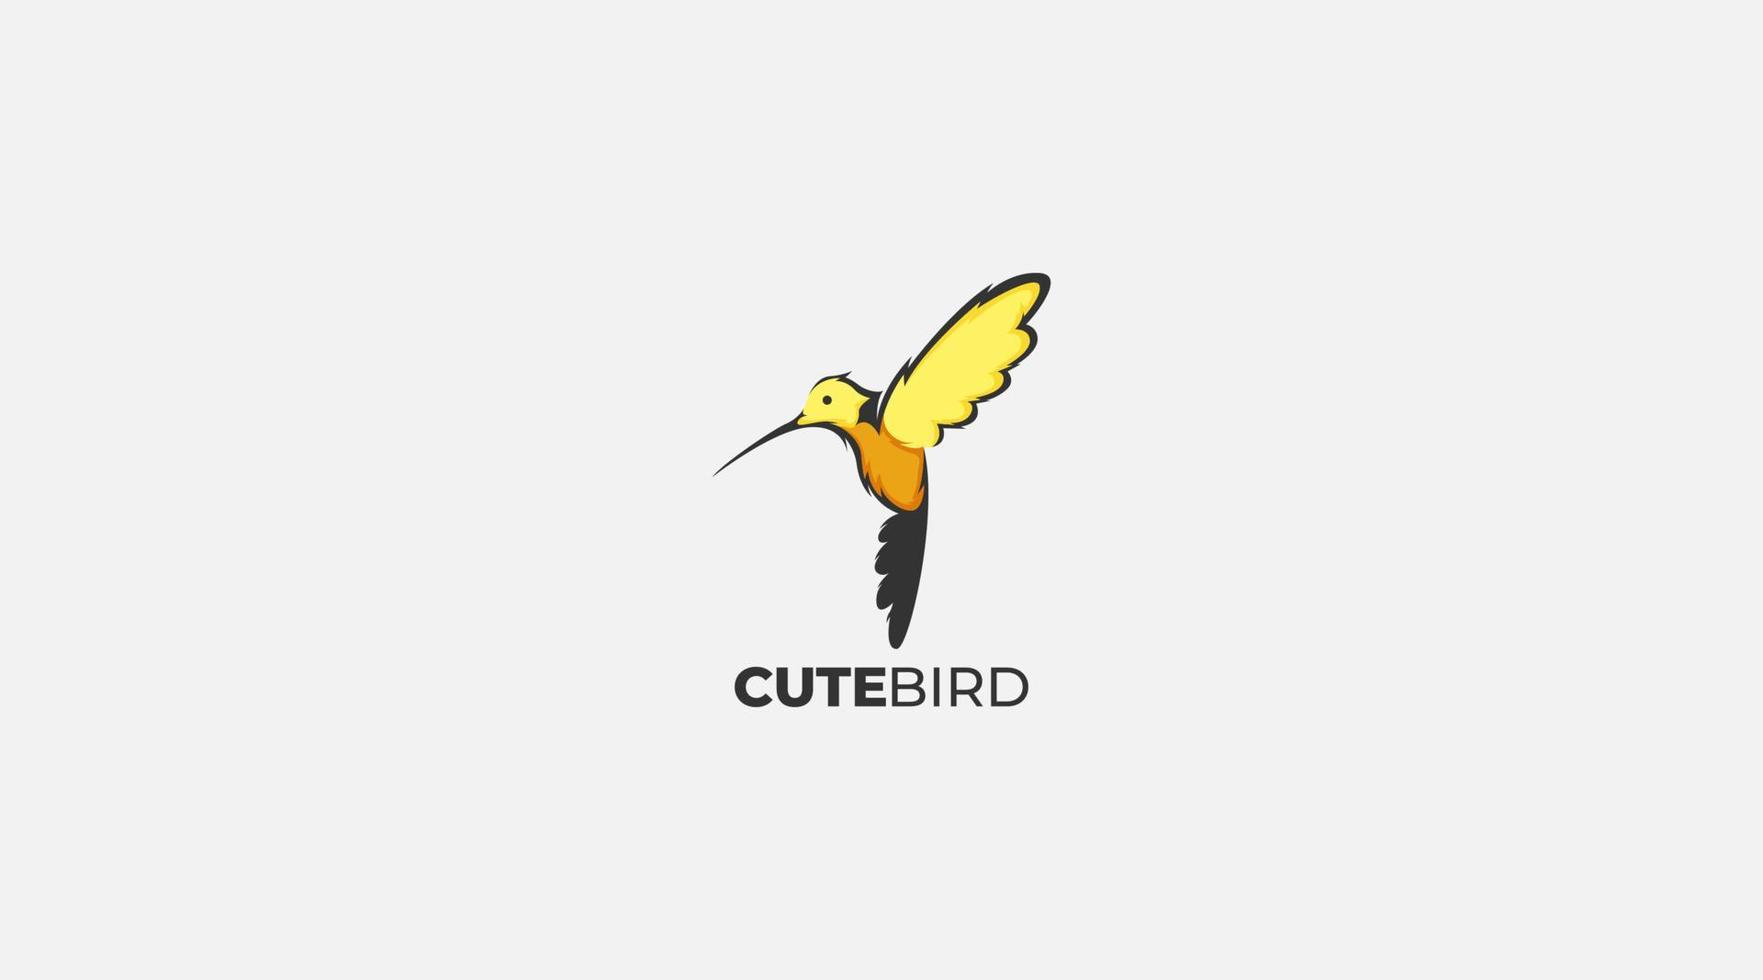 Premium Bird logo design vector symbol illustration